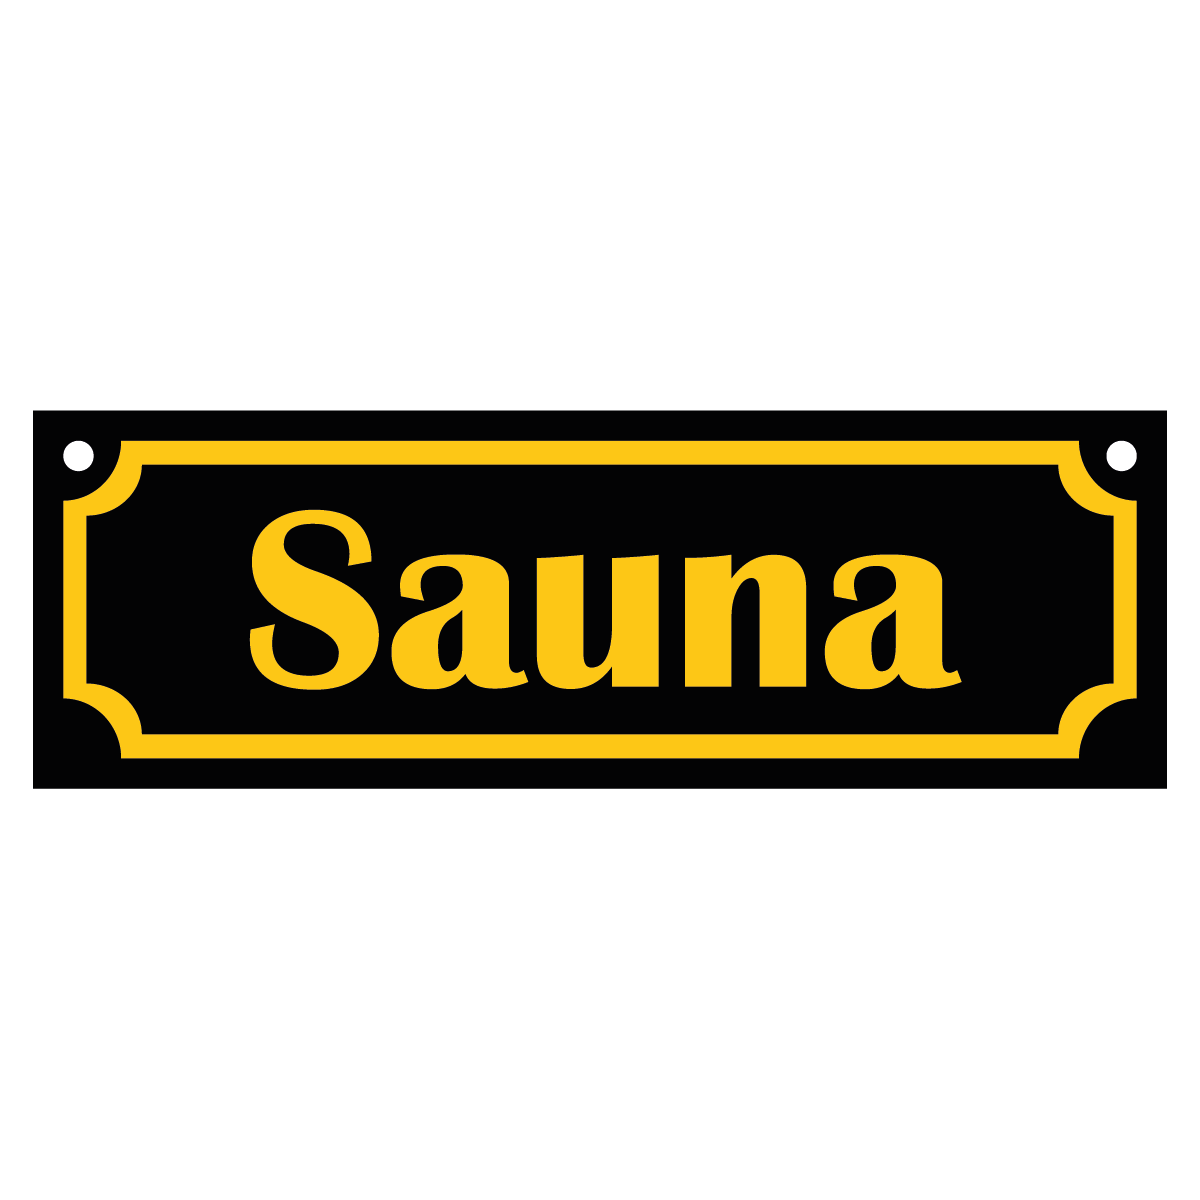 Sauna - Skylt - 150x50mm - Svart - Gul